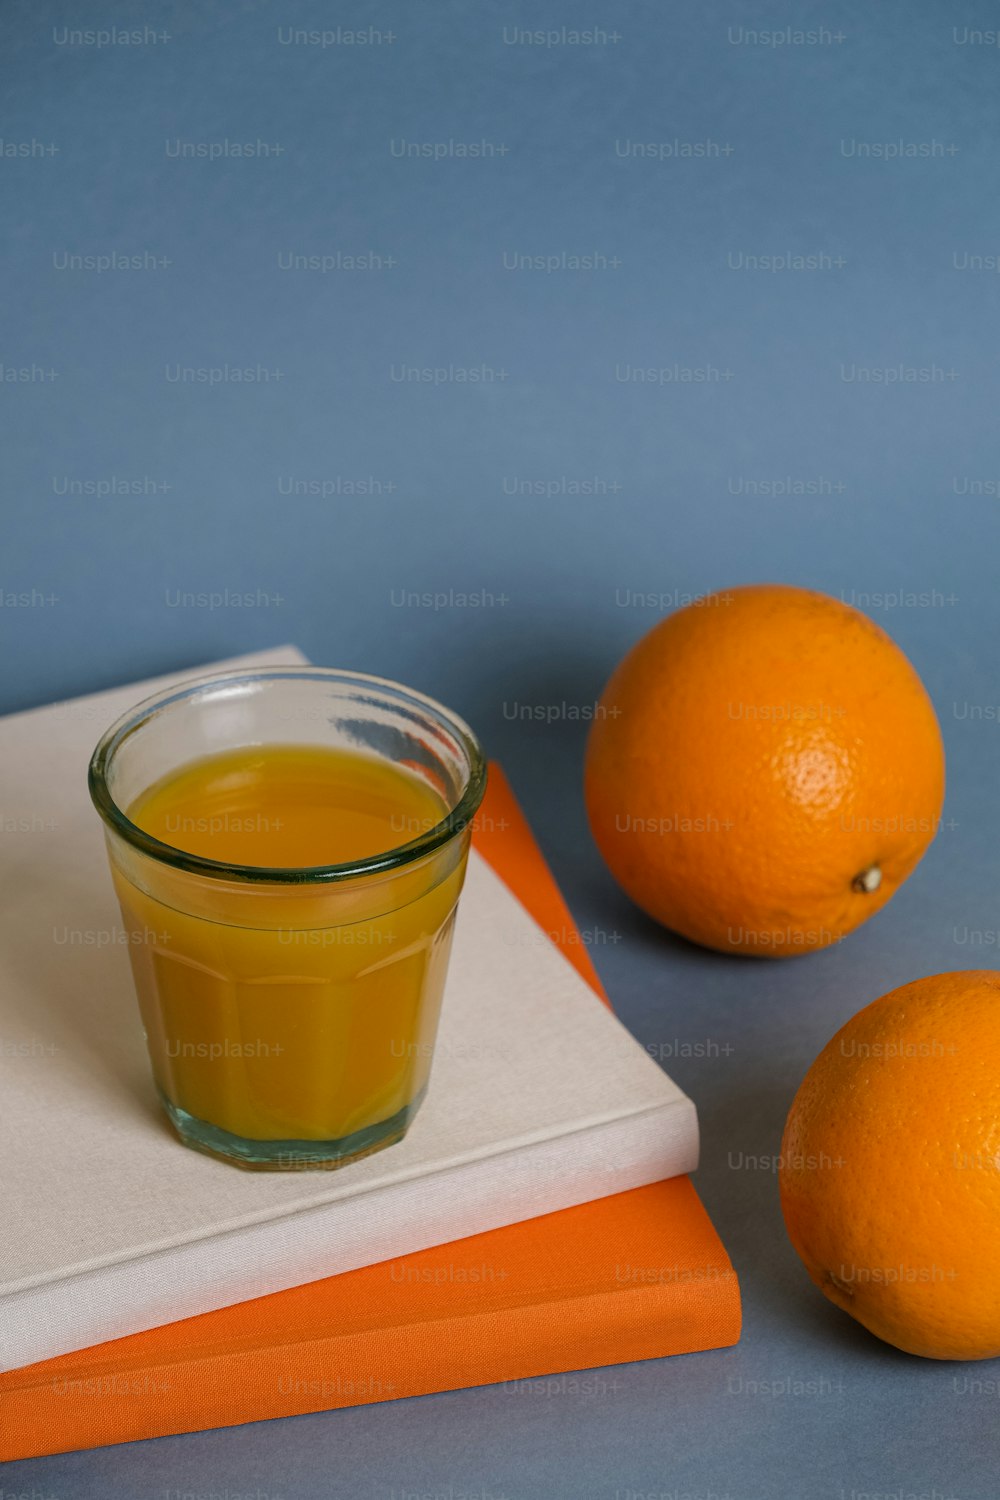 오렌지 두 개 옆에 오렌지 주스 한 잔